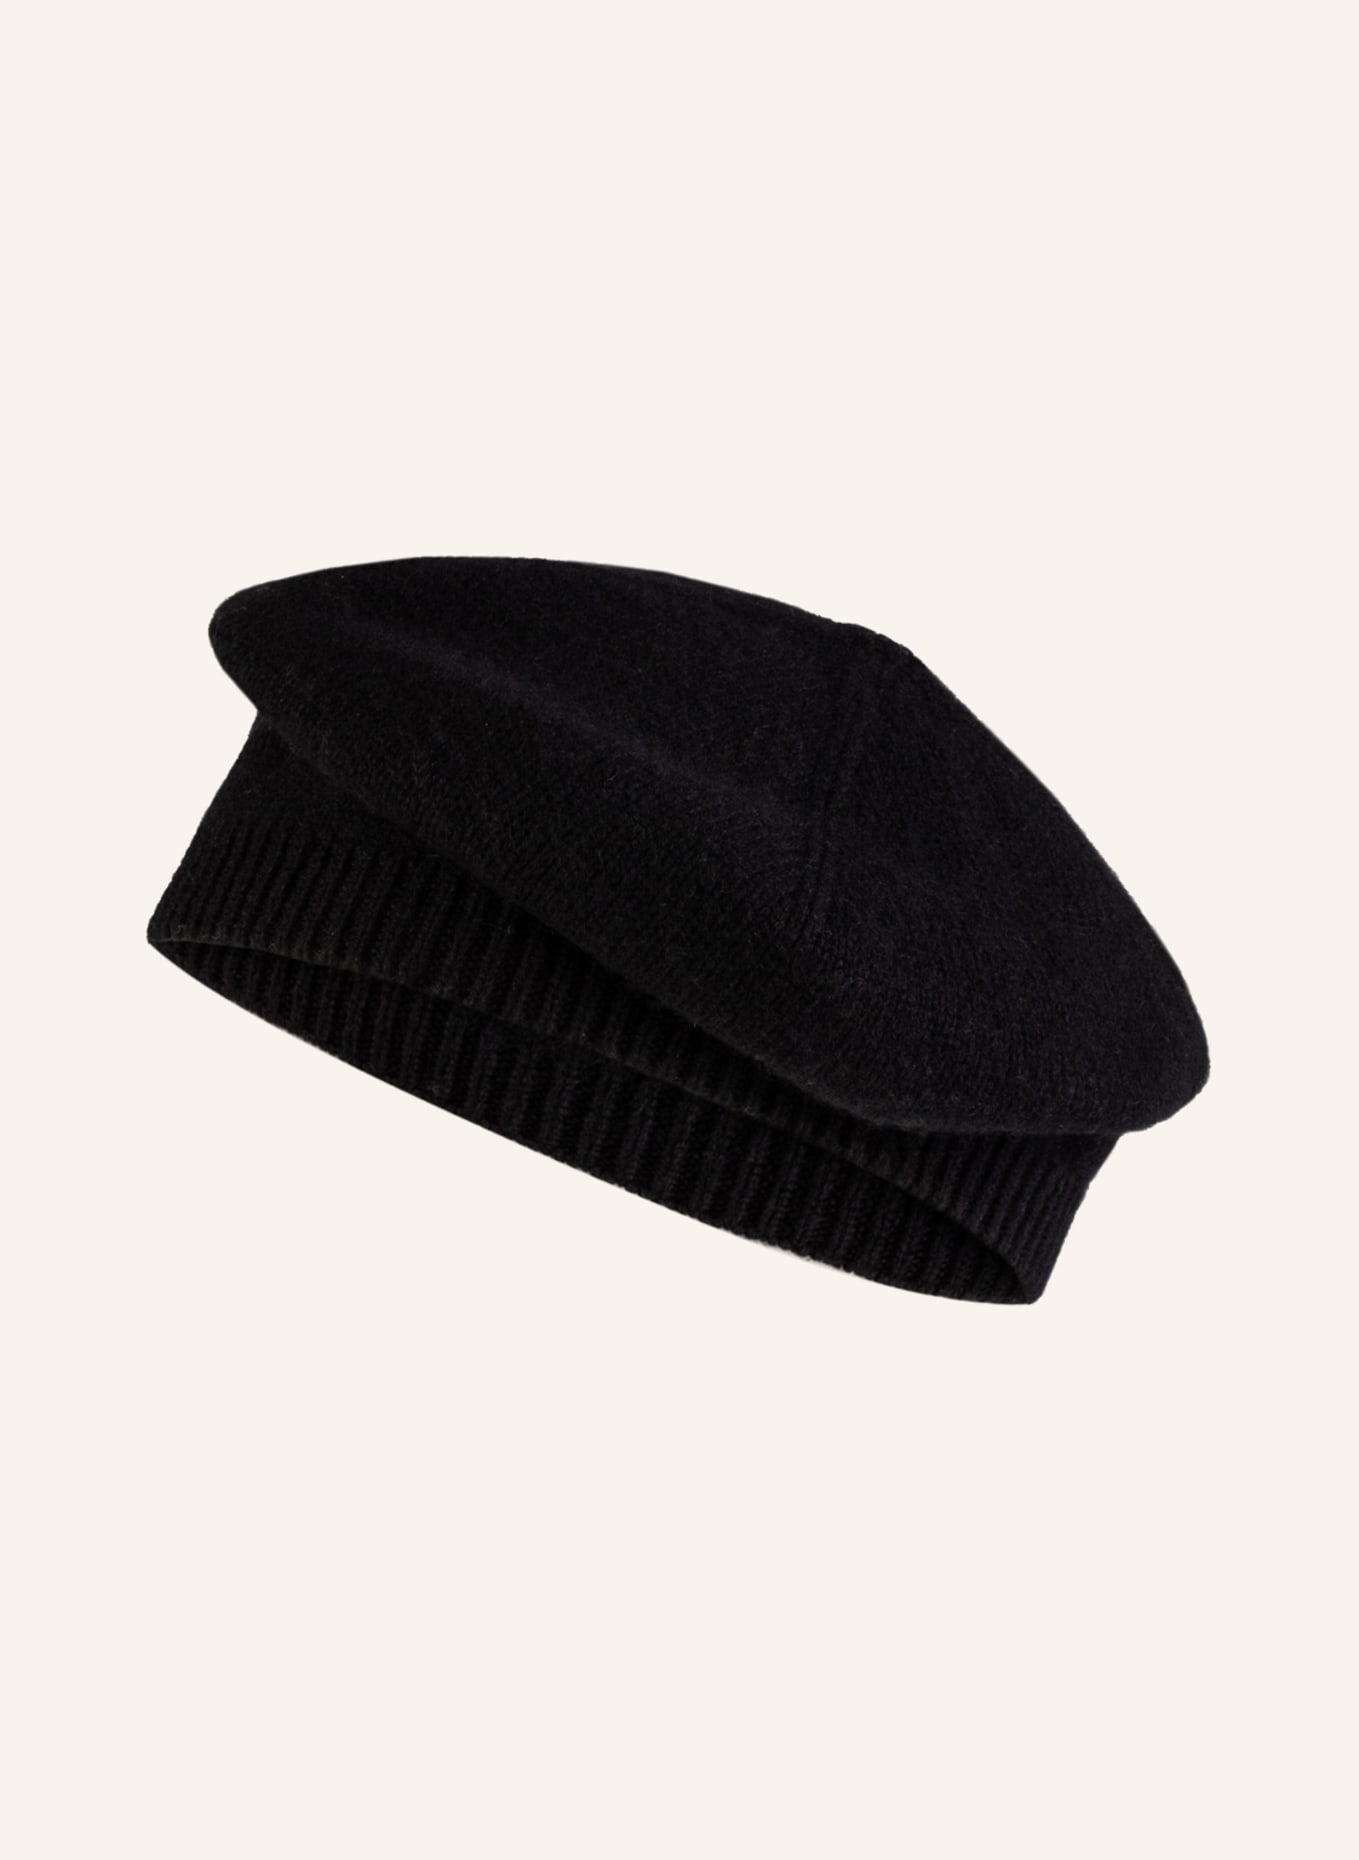 S.MARLON Cashmere-Mütze, Farbe: SCHWARZ (Bild 1)